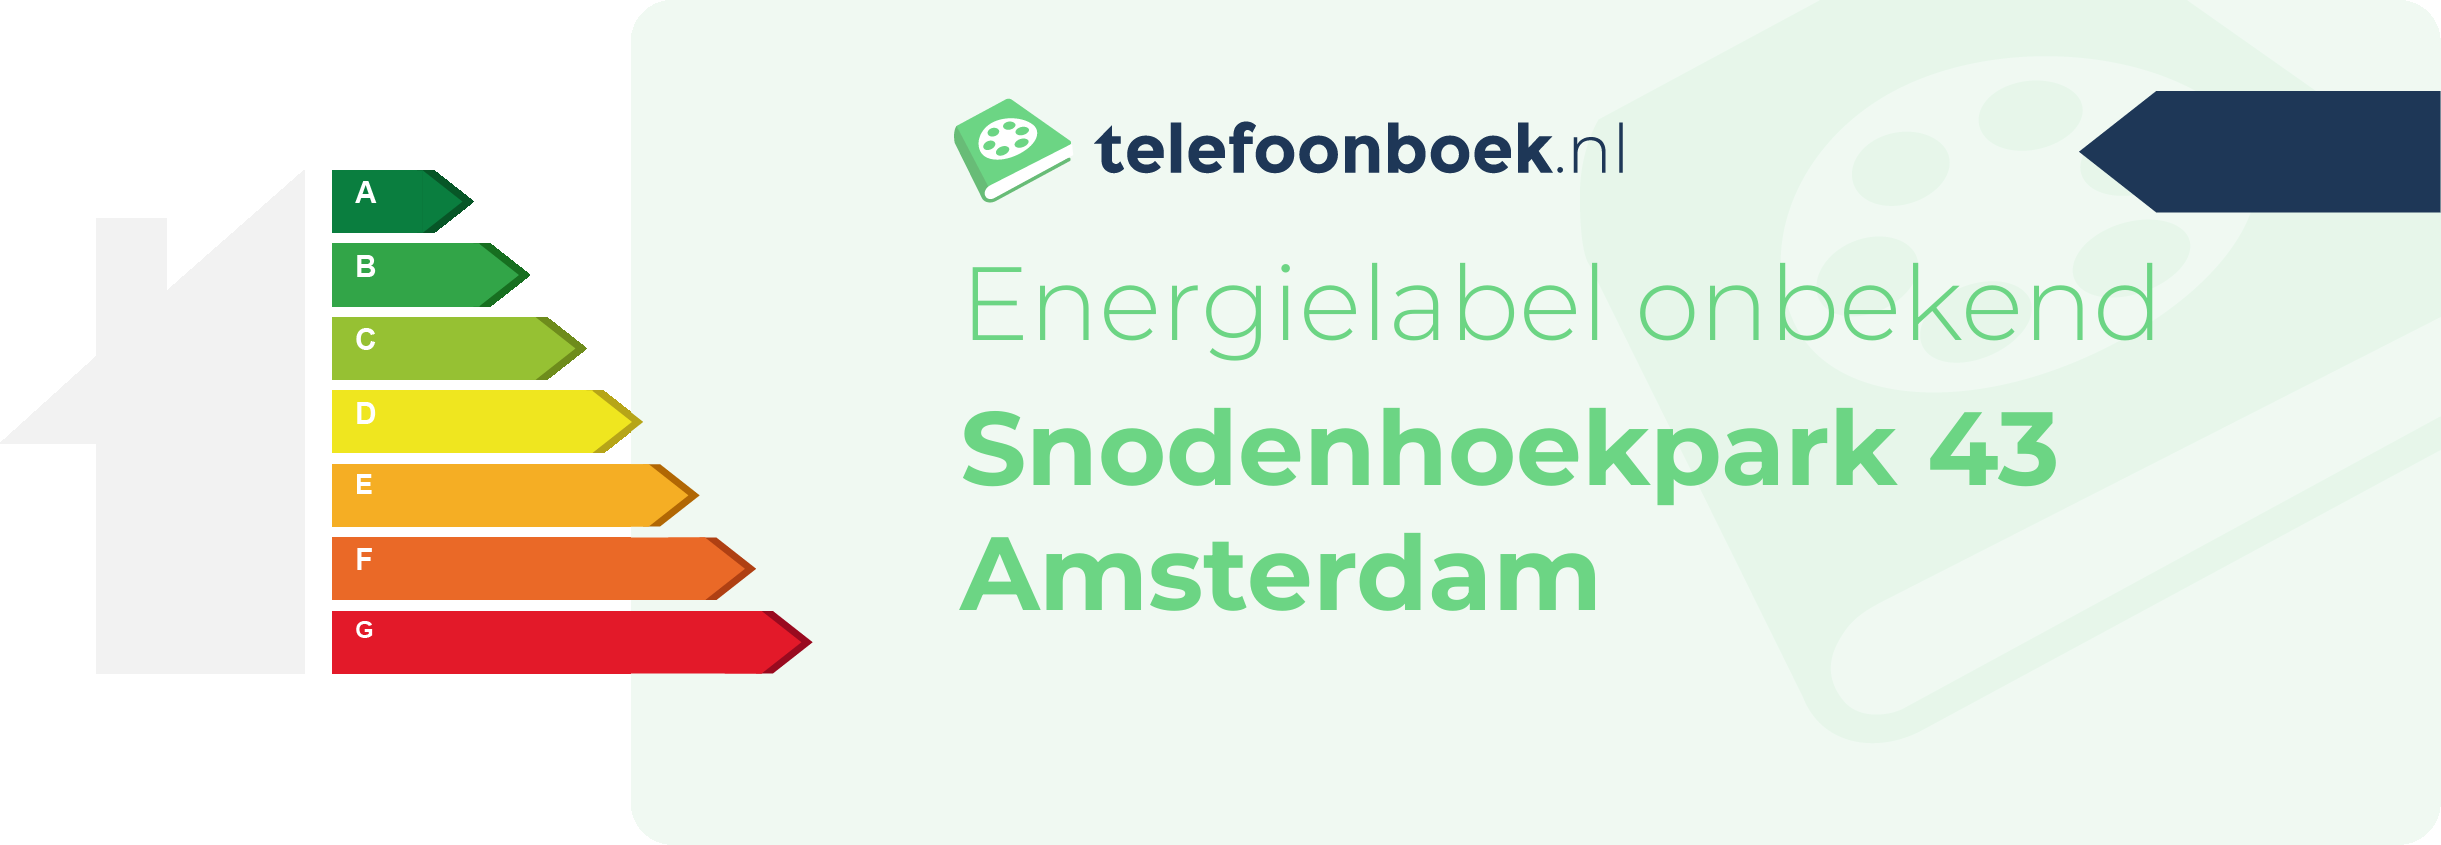 Energielabel Snodenhoekpark 43 Amsterdam